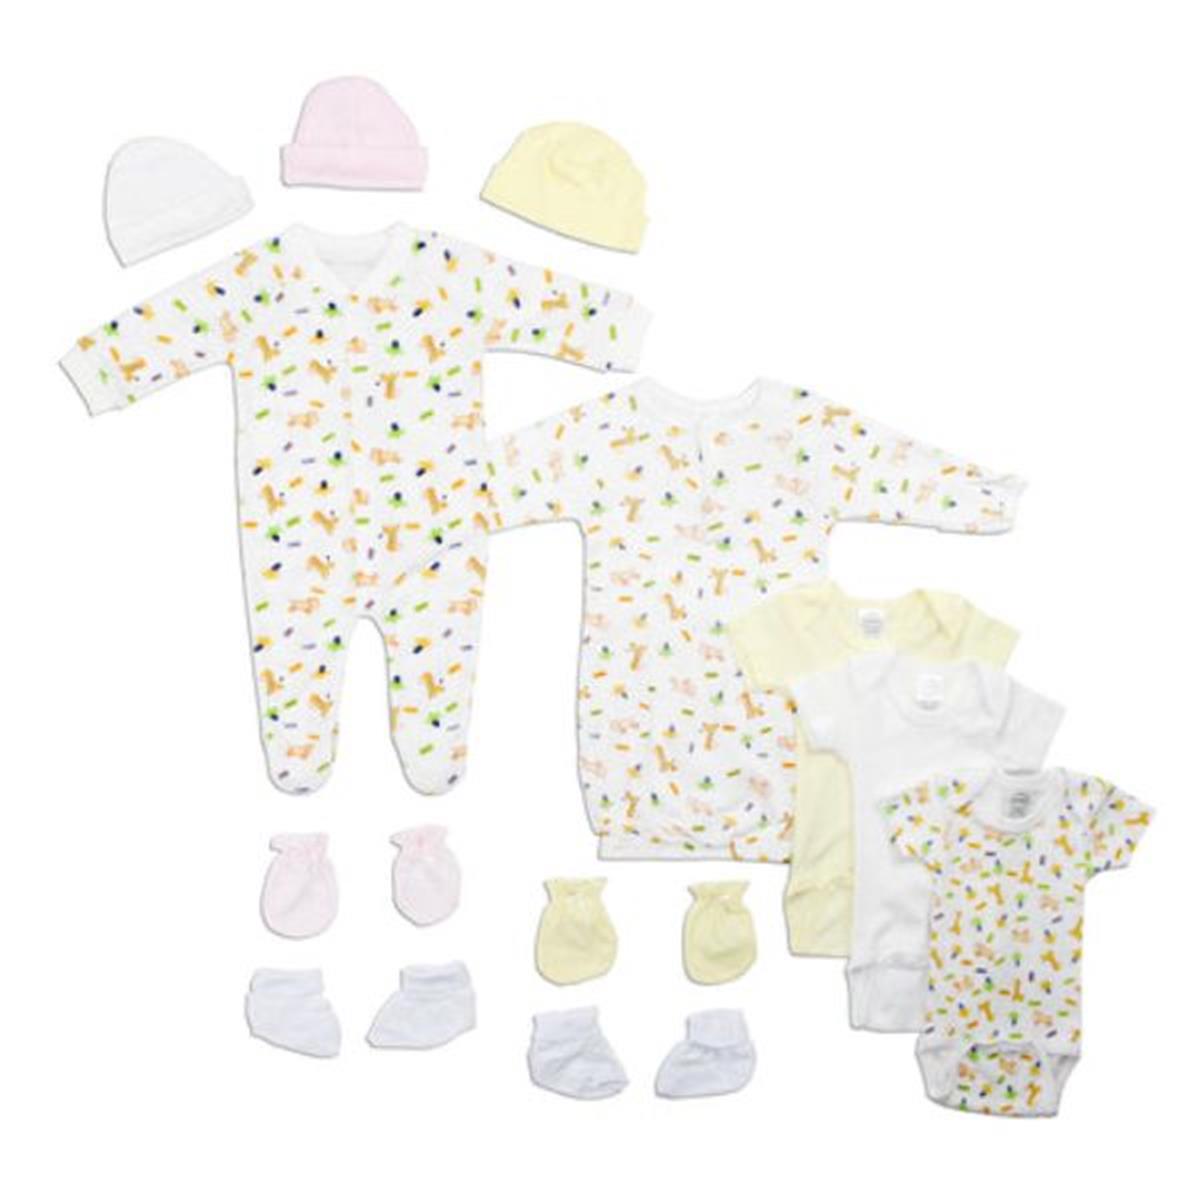 Bambini LS-0120 Newborn Baby Girls Layette Baby Shower Gift Set&#44; White & Pink - Newborn